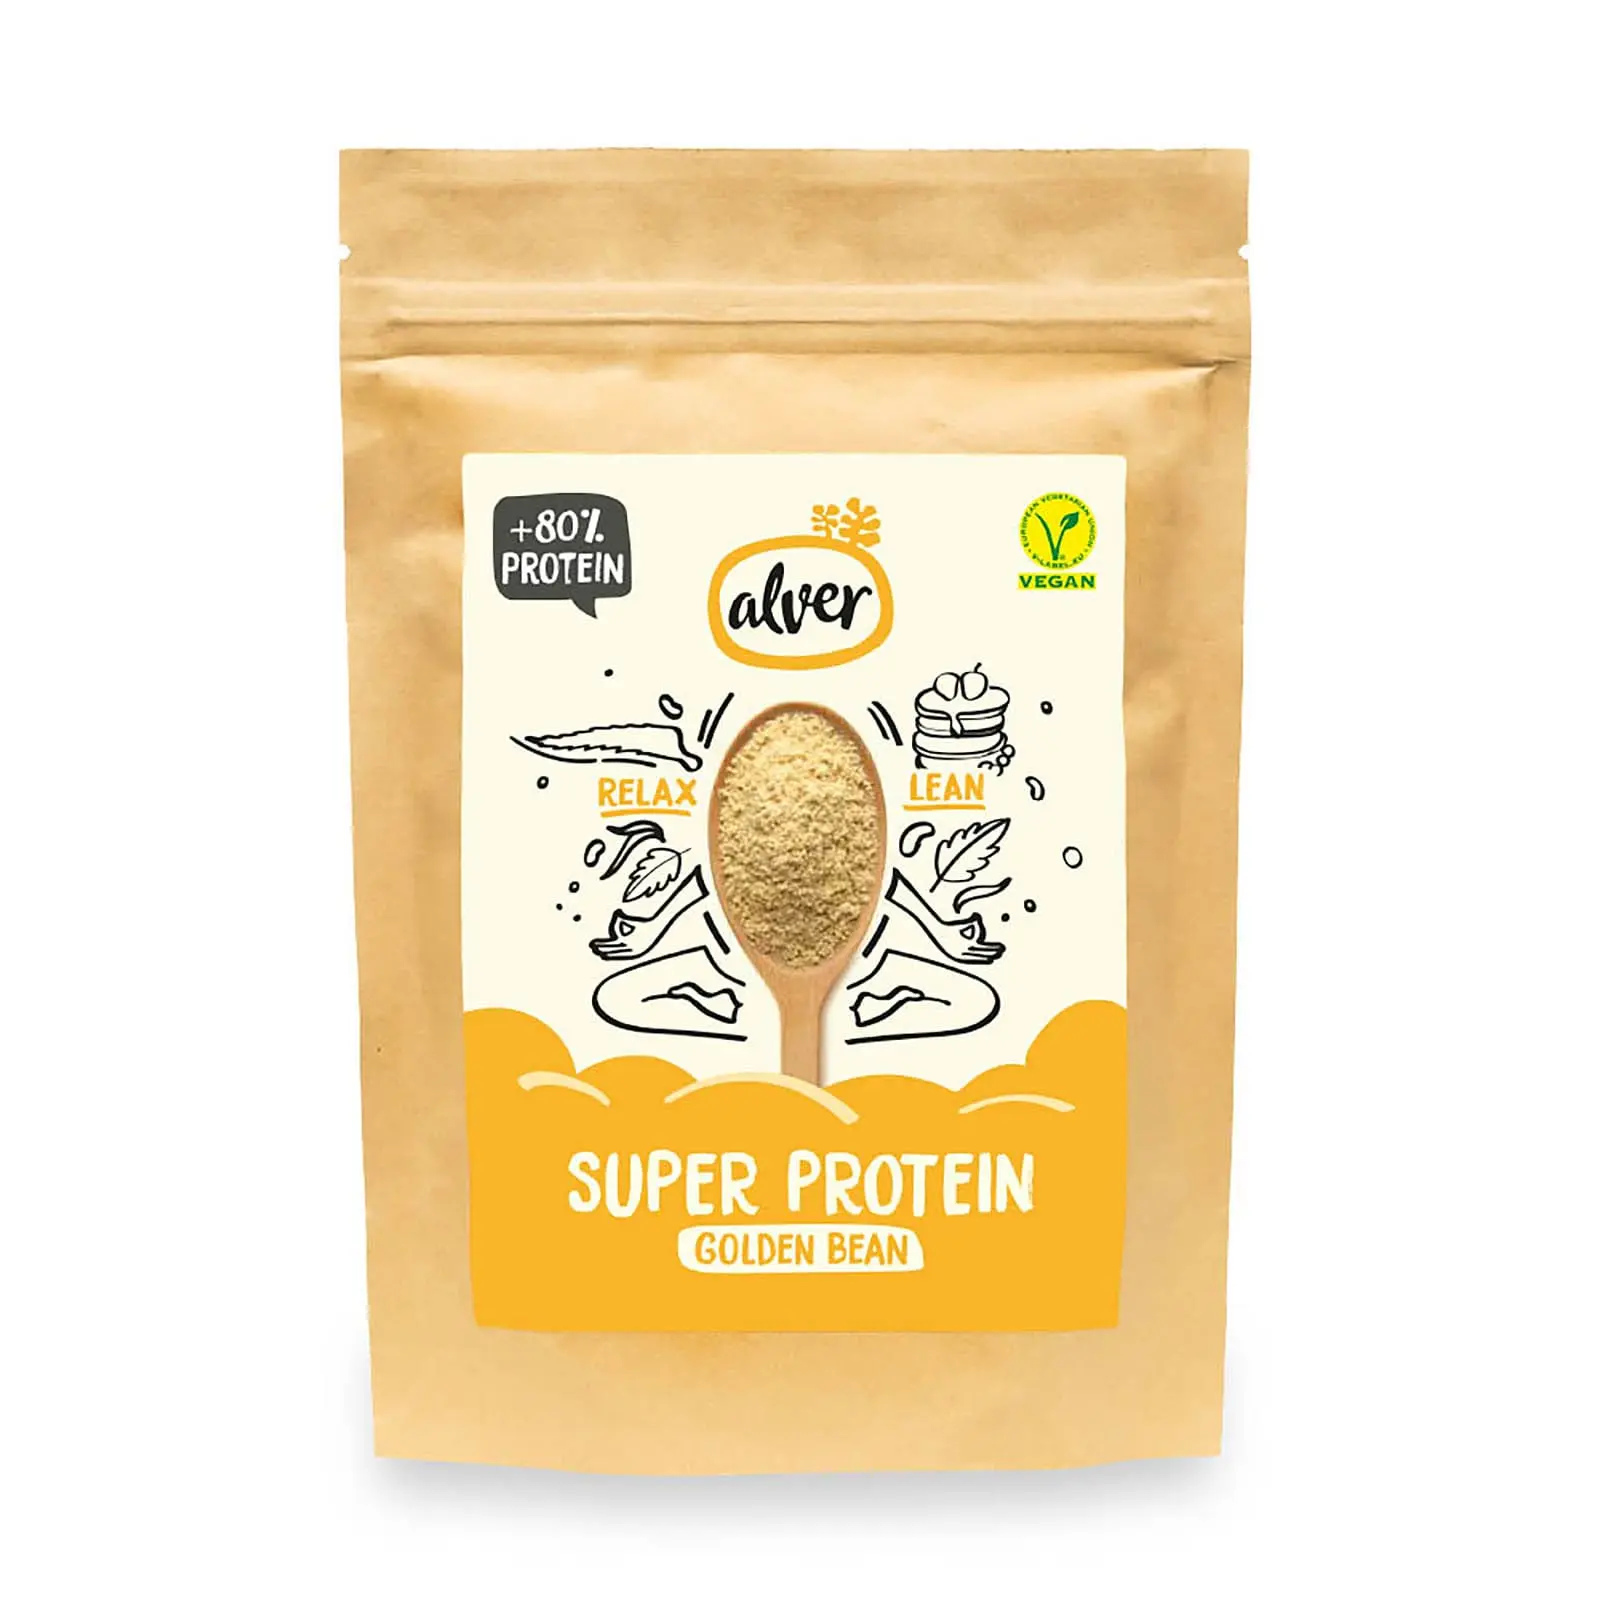 Alver Golden Bean spindulinių pupuolių baltymų milteliai tinka veganams daugiau nei 80 proc augalinių baltymų